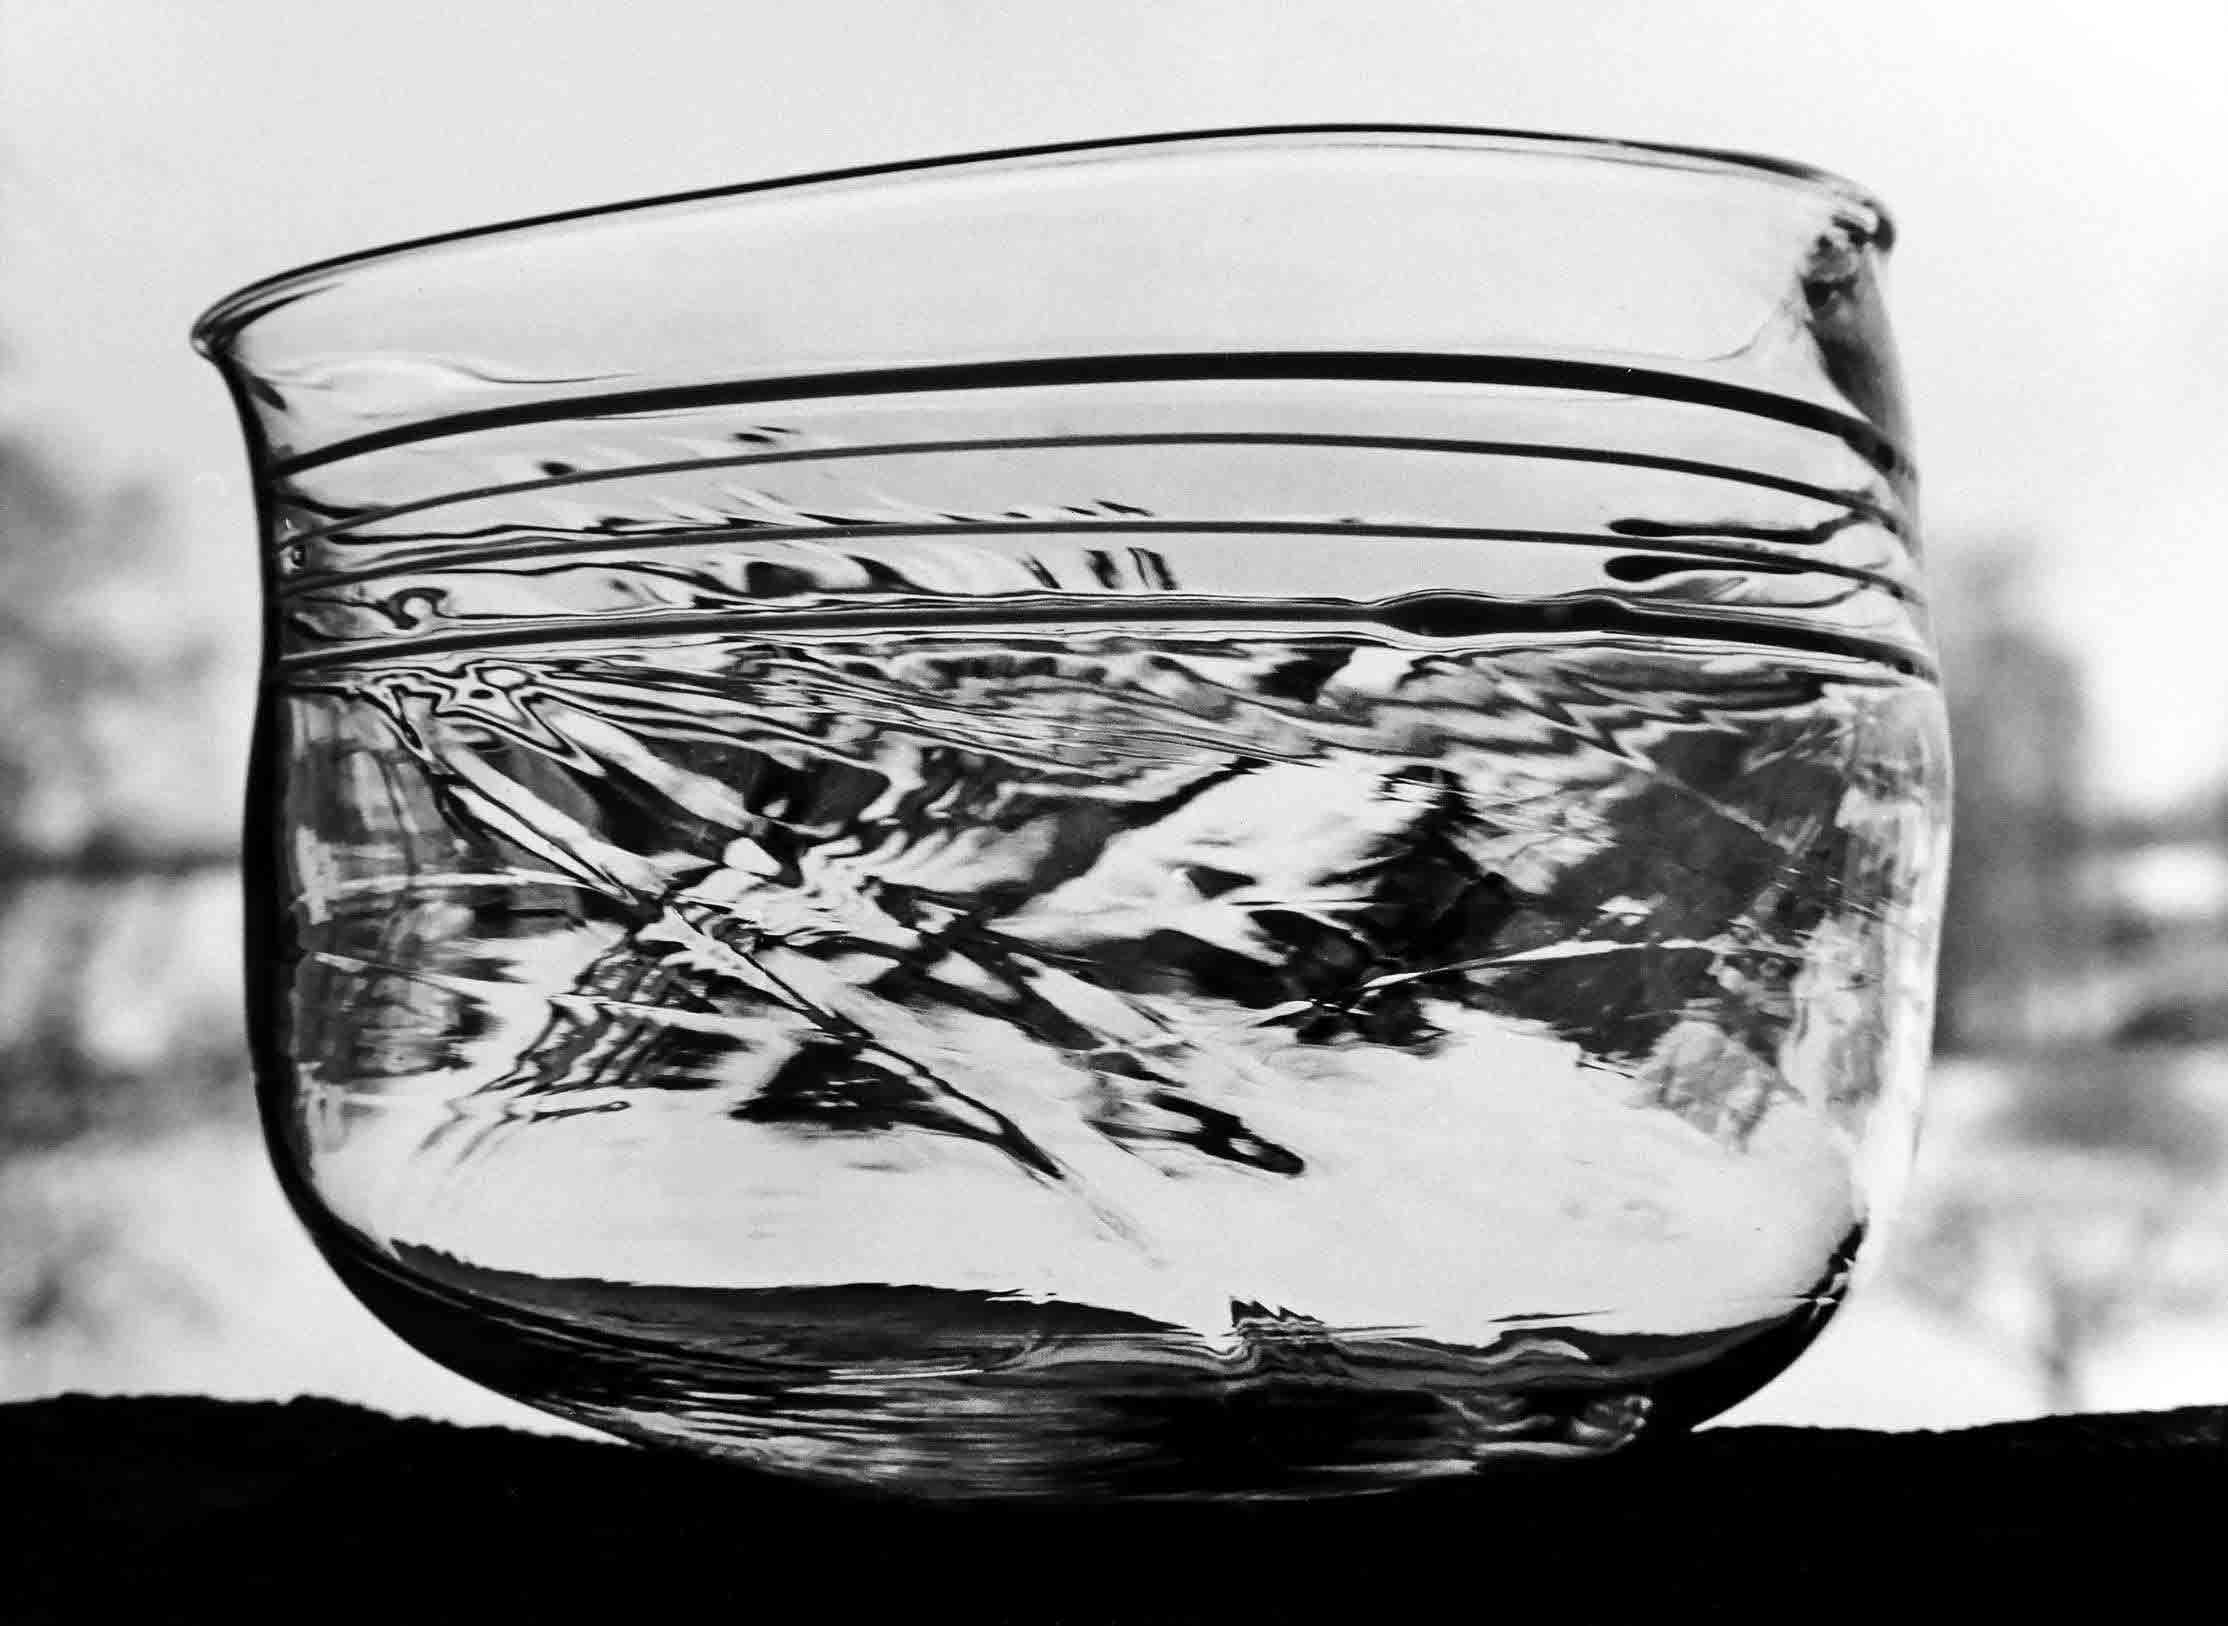 "Rampigt"glas, i samarbete med Evald Kraft bitr hyttmästare, foto: John Selbing